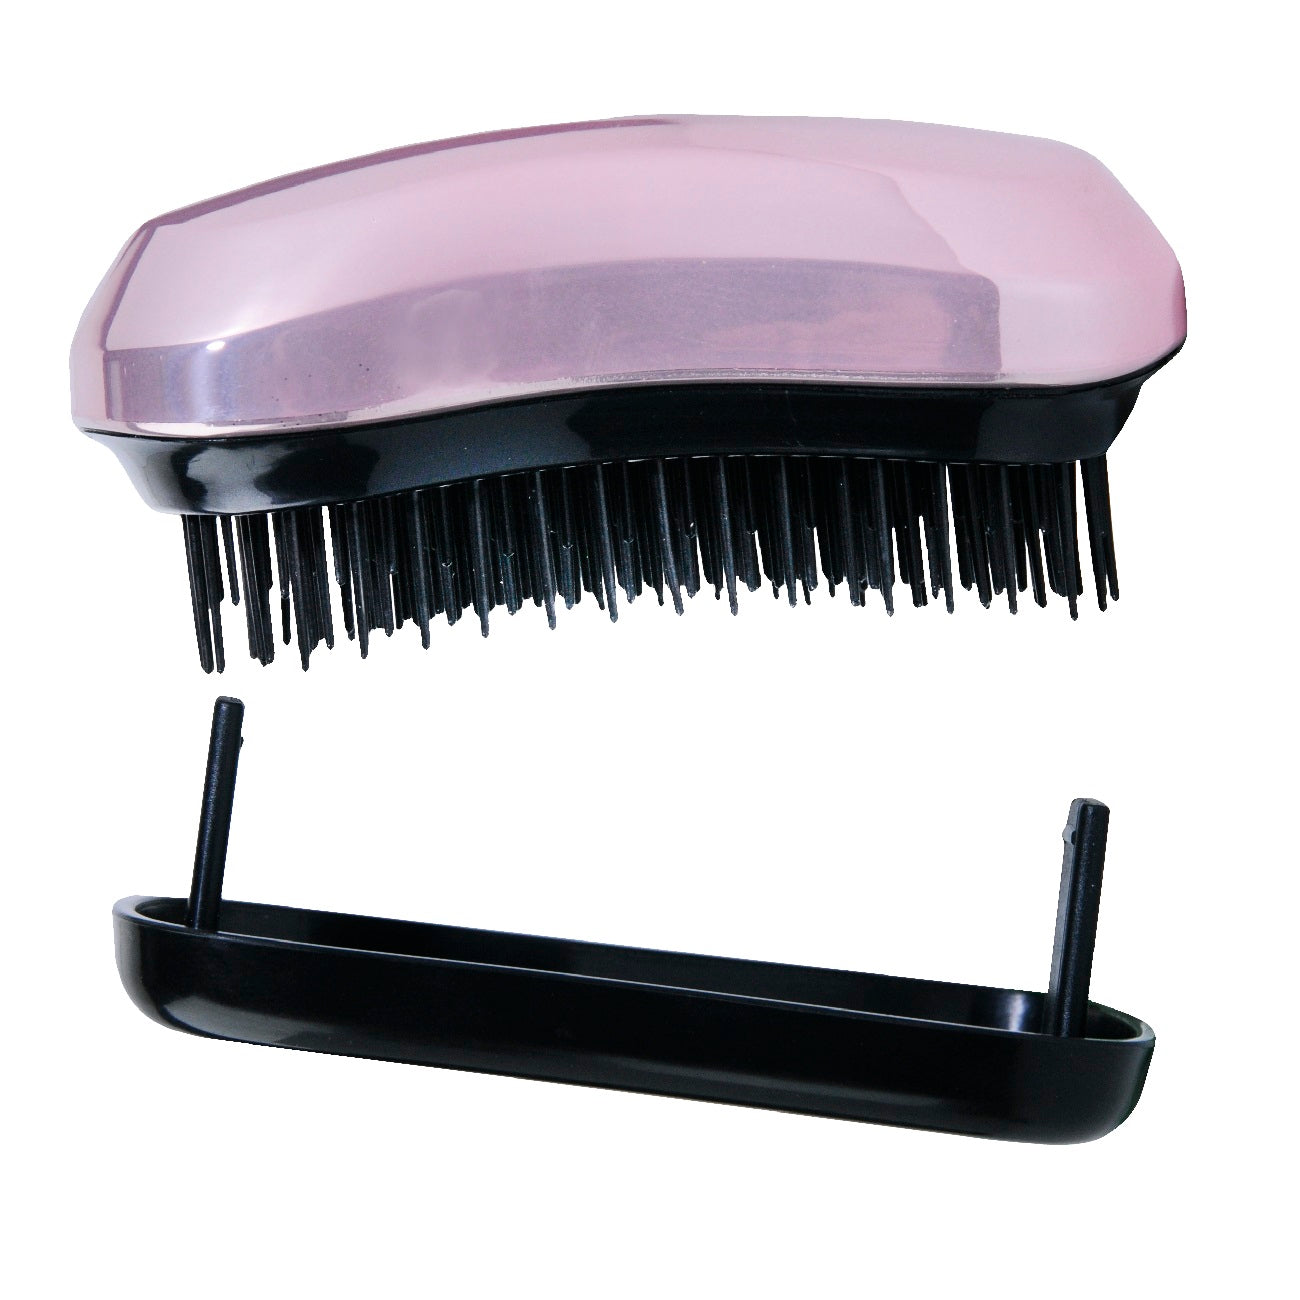 Inter Vion Компактная расческа для волос Brush &amp; Go с розовым металликом